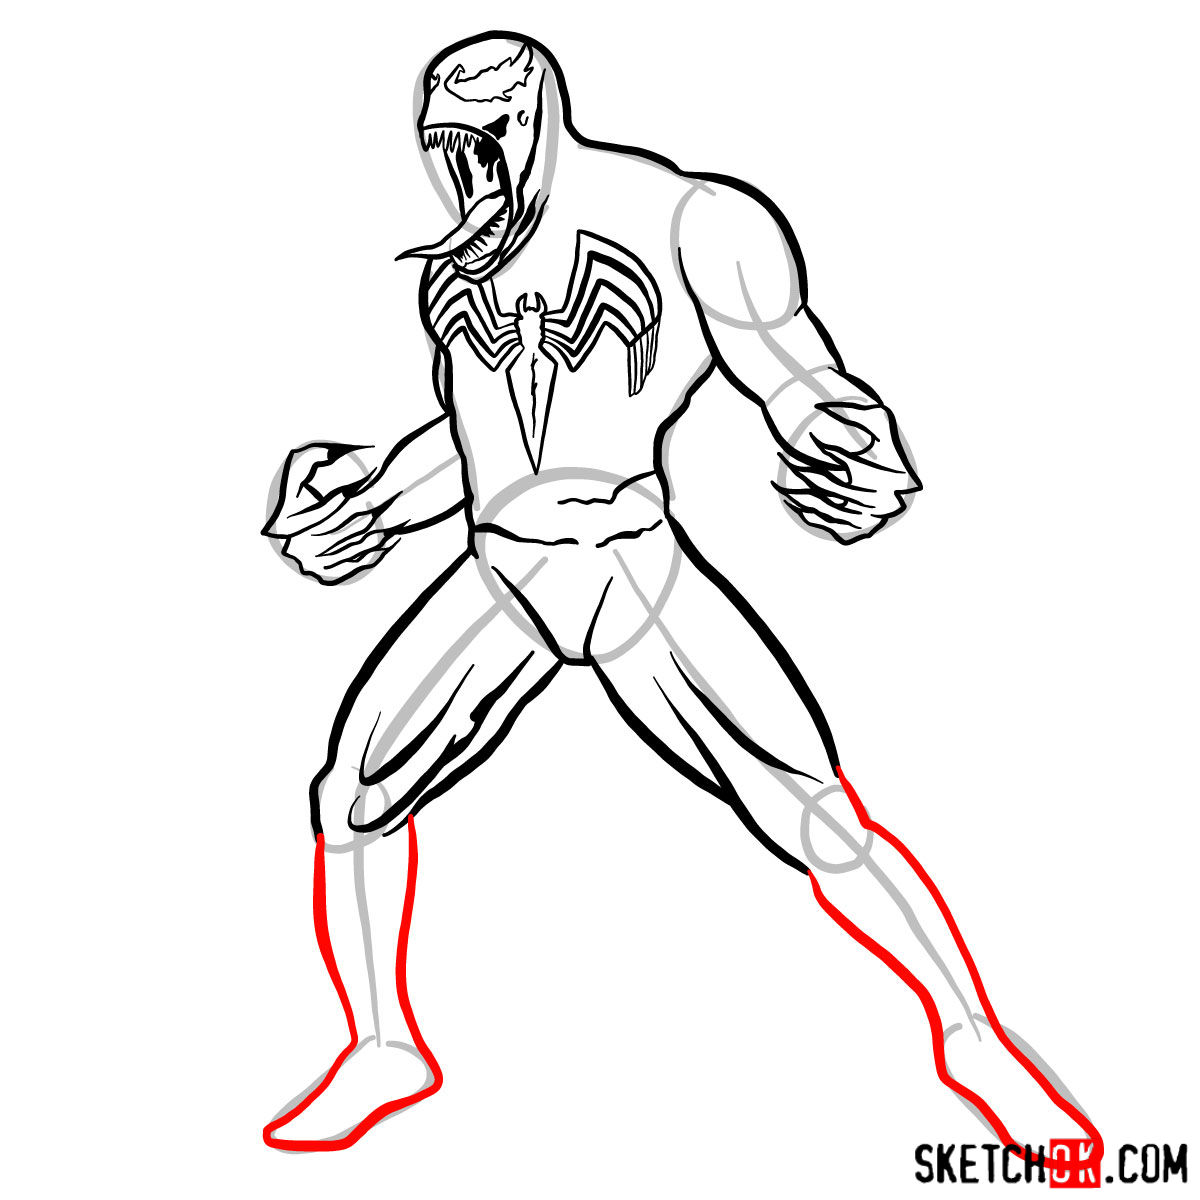 How to draw Venom symbiote step by step - step 10